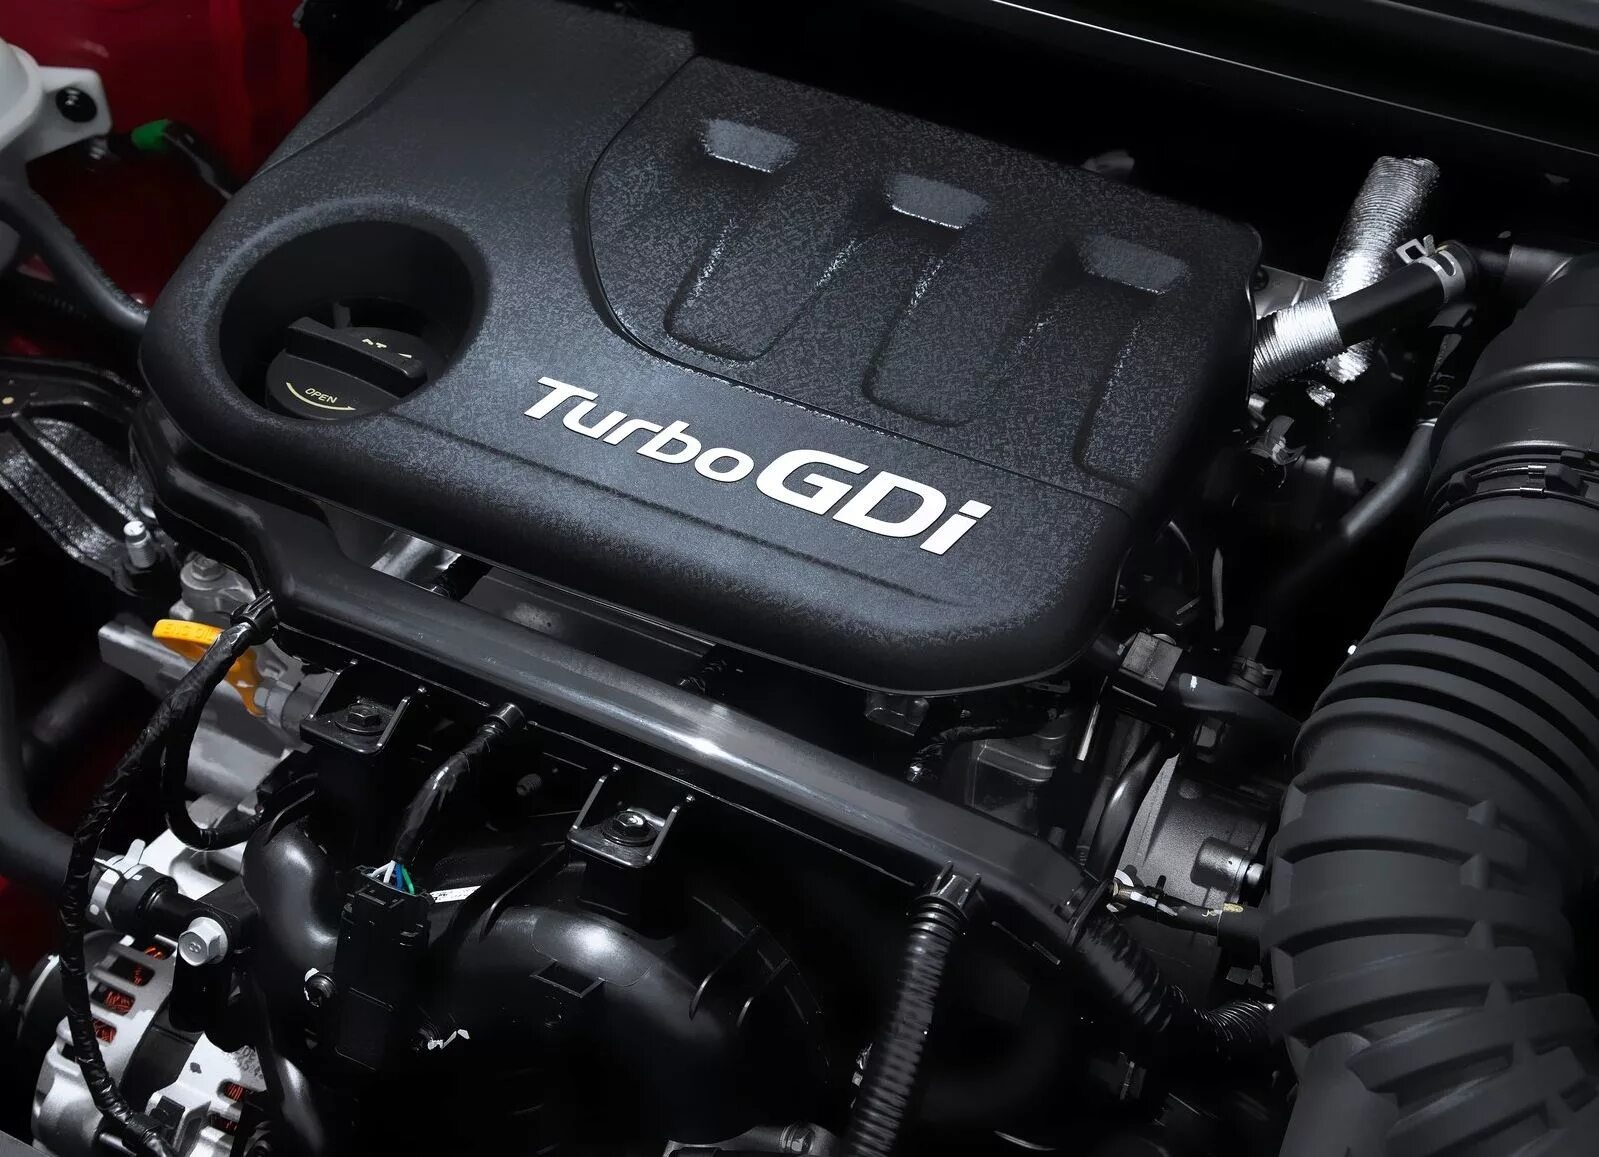 Купить мотор хендай. Hyundai i20 двигатель. Hyundai i30 FD топовый мотор. Хендай ай 20 двигатель. G4fj 1.6 t-GDI номер двигателя.